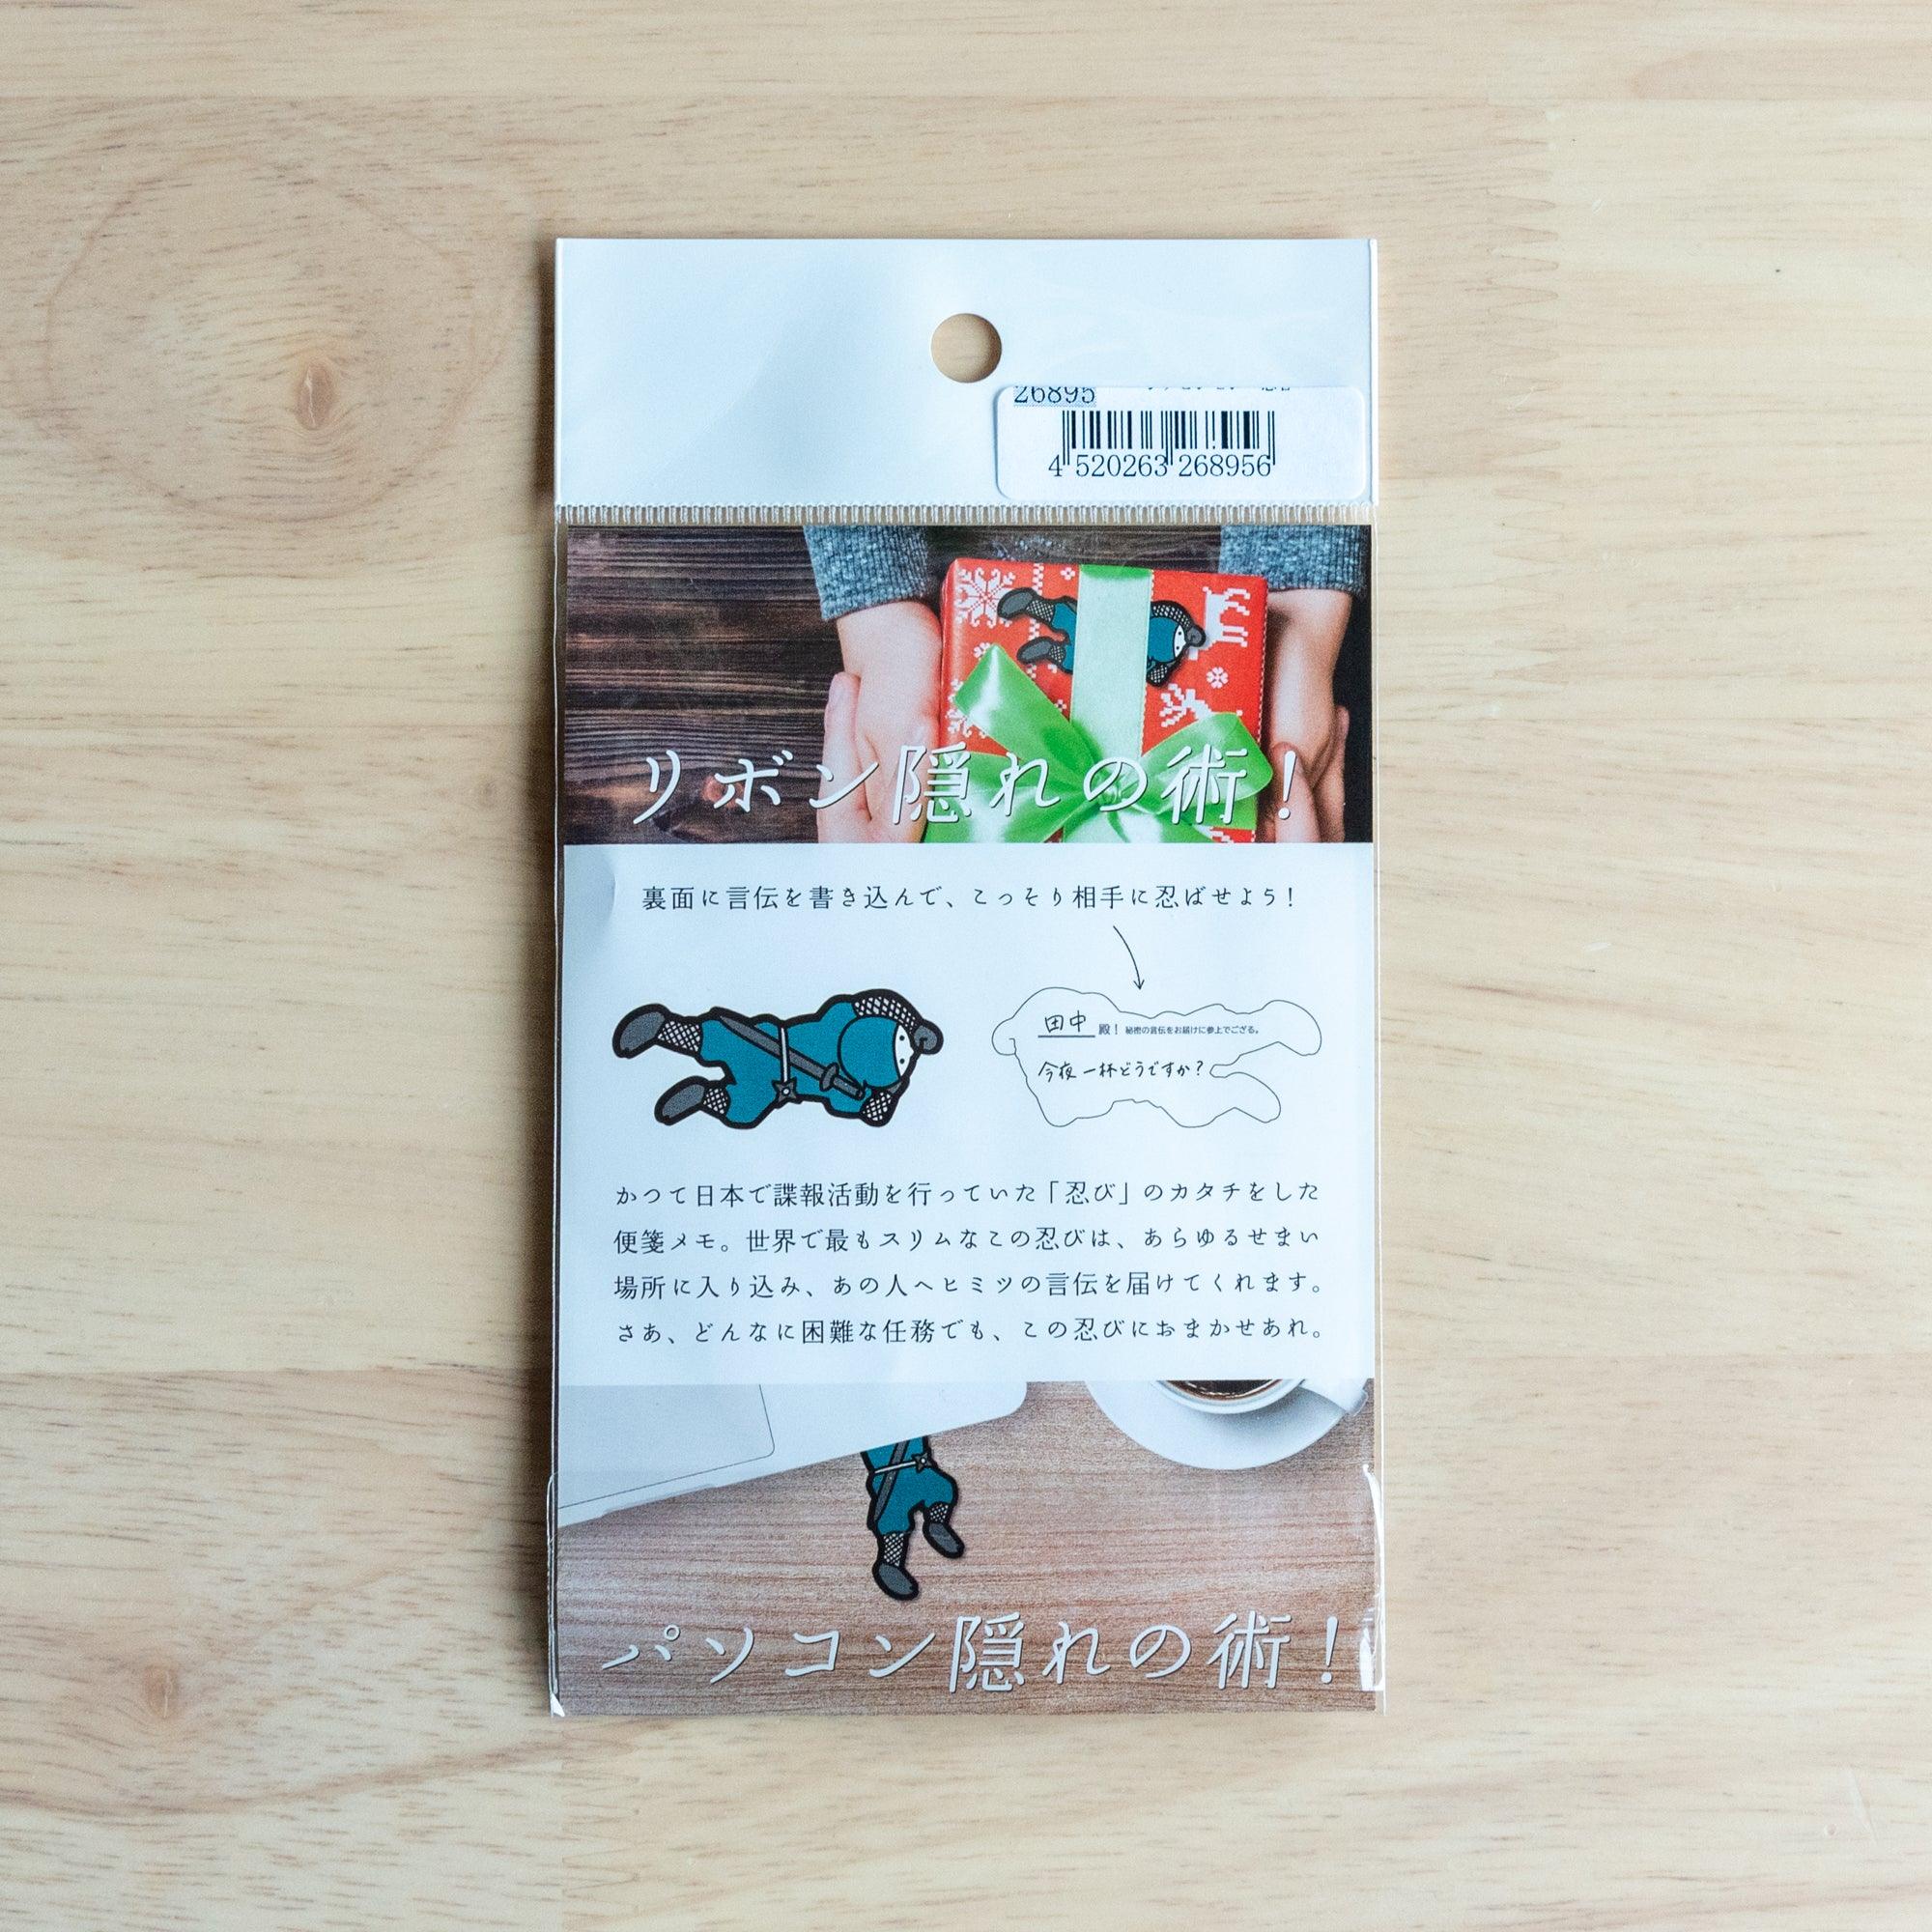 Blue Ninja Yuzen Washi Note Card - Shogado - Komorebi Stationery